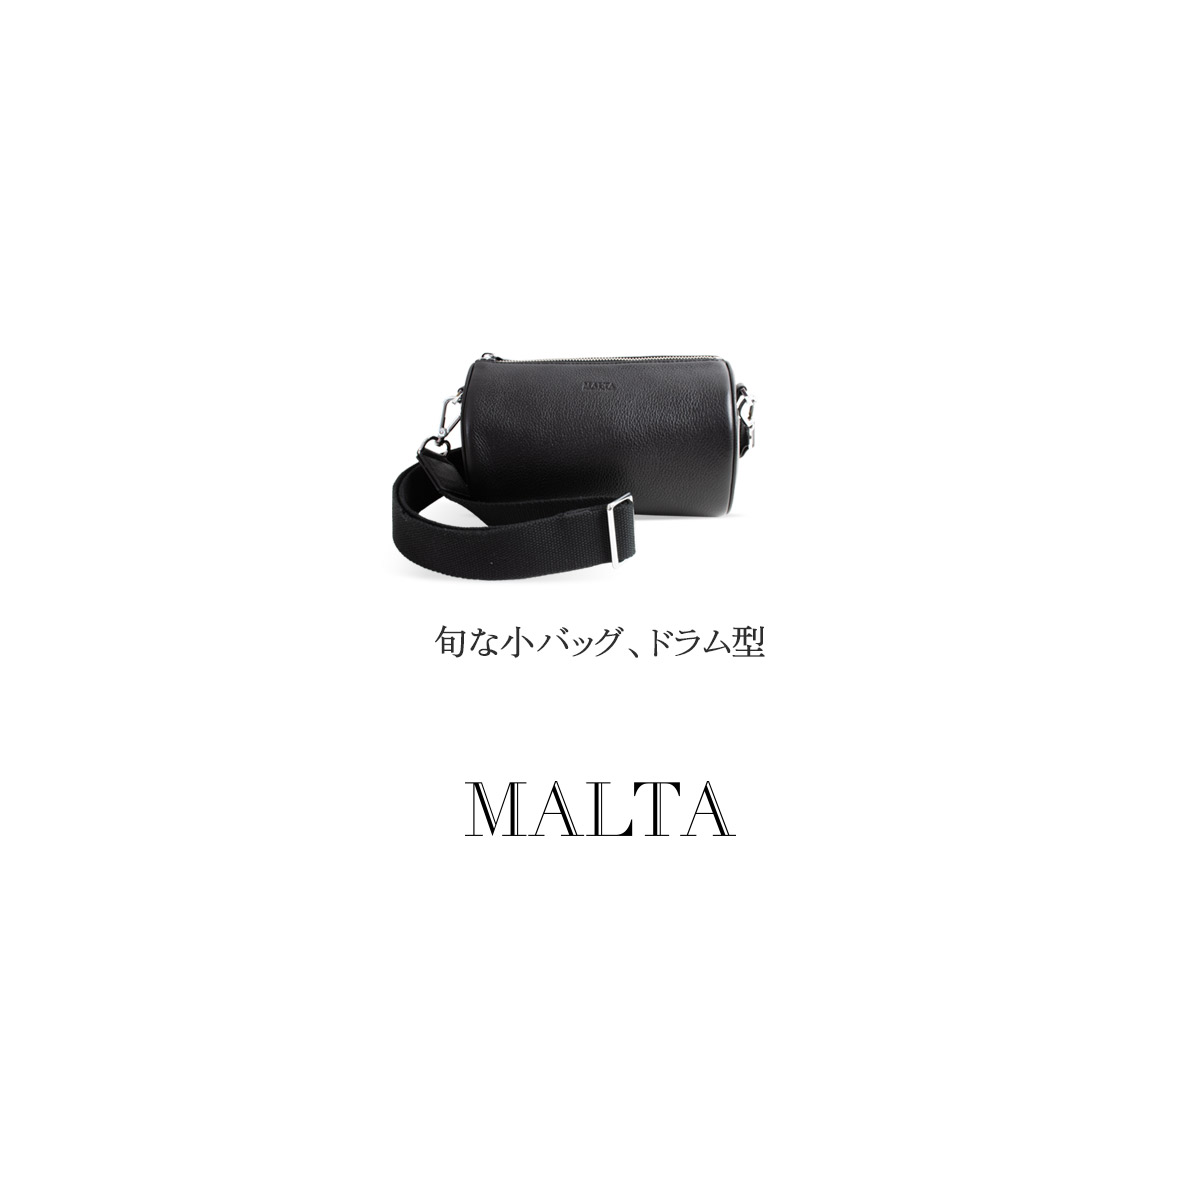 【色: black/stripe A】MALTA バッグ レディース ショルダー